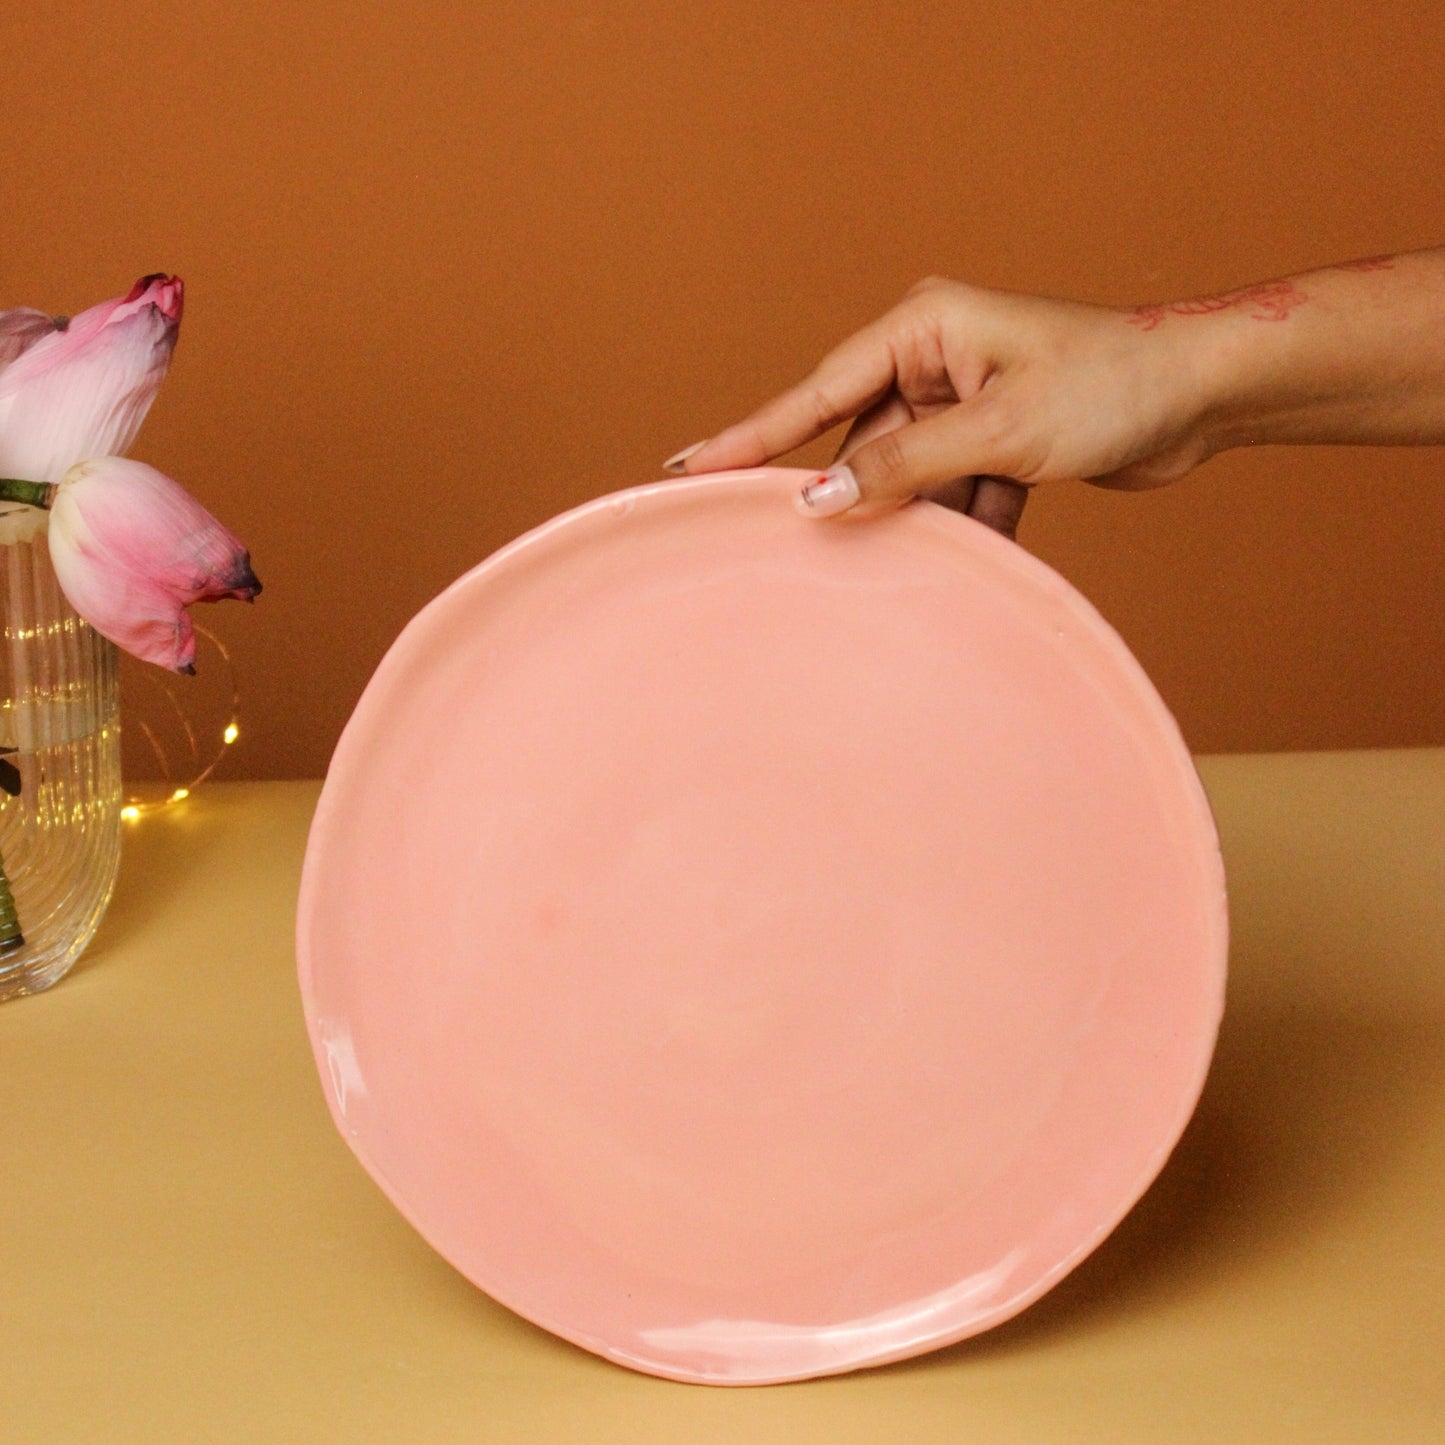 Ceramic 10" Dinner Plate